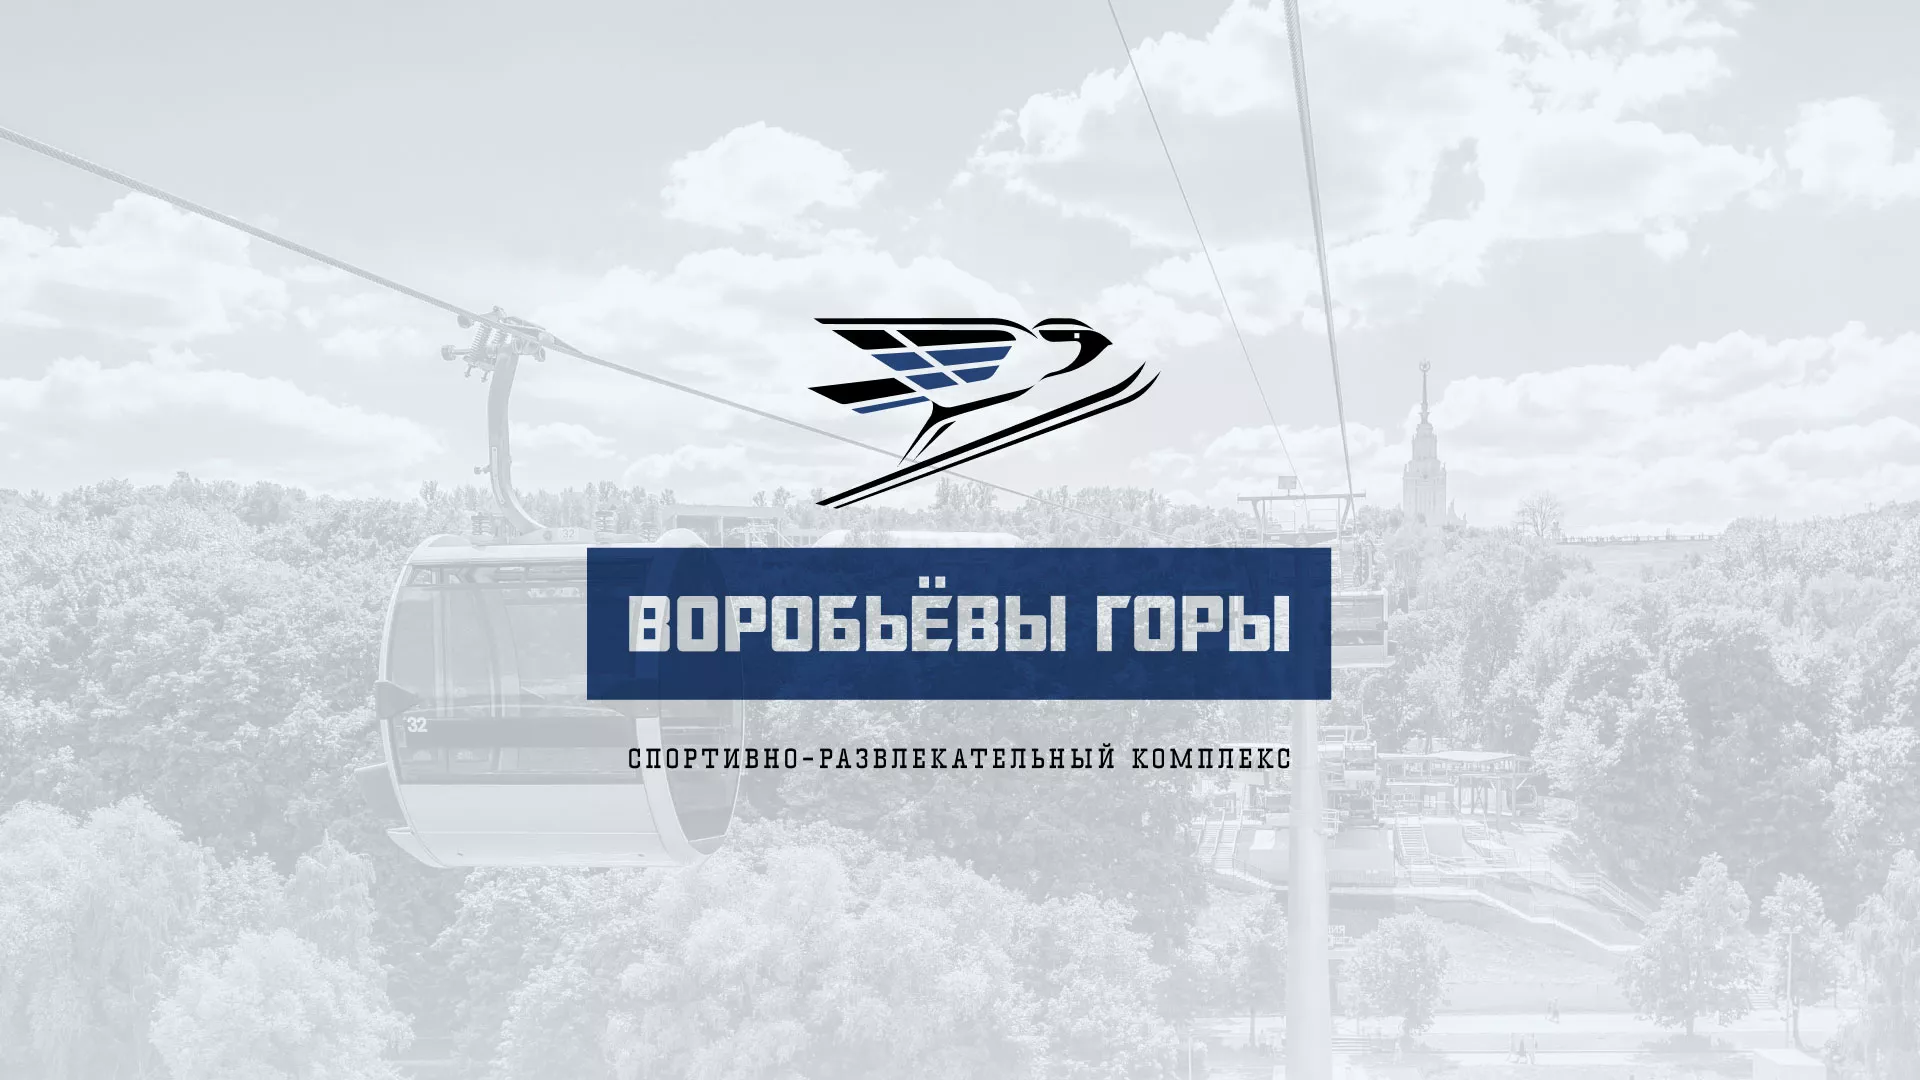 Разработка сайта в Орехово-Зуево для спортивно-развлекательного комплекса «Воробьёвы горы»